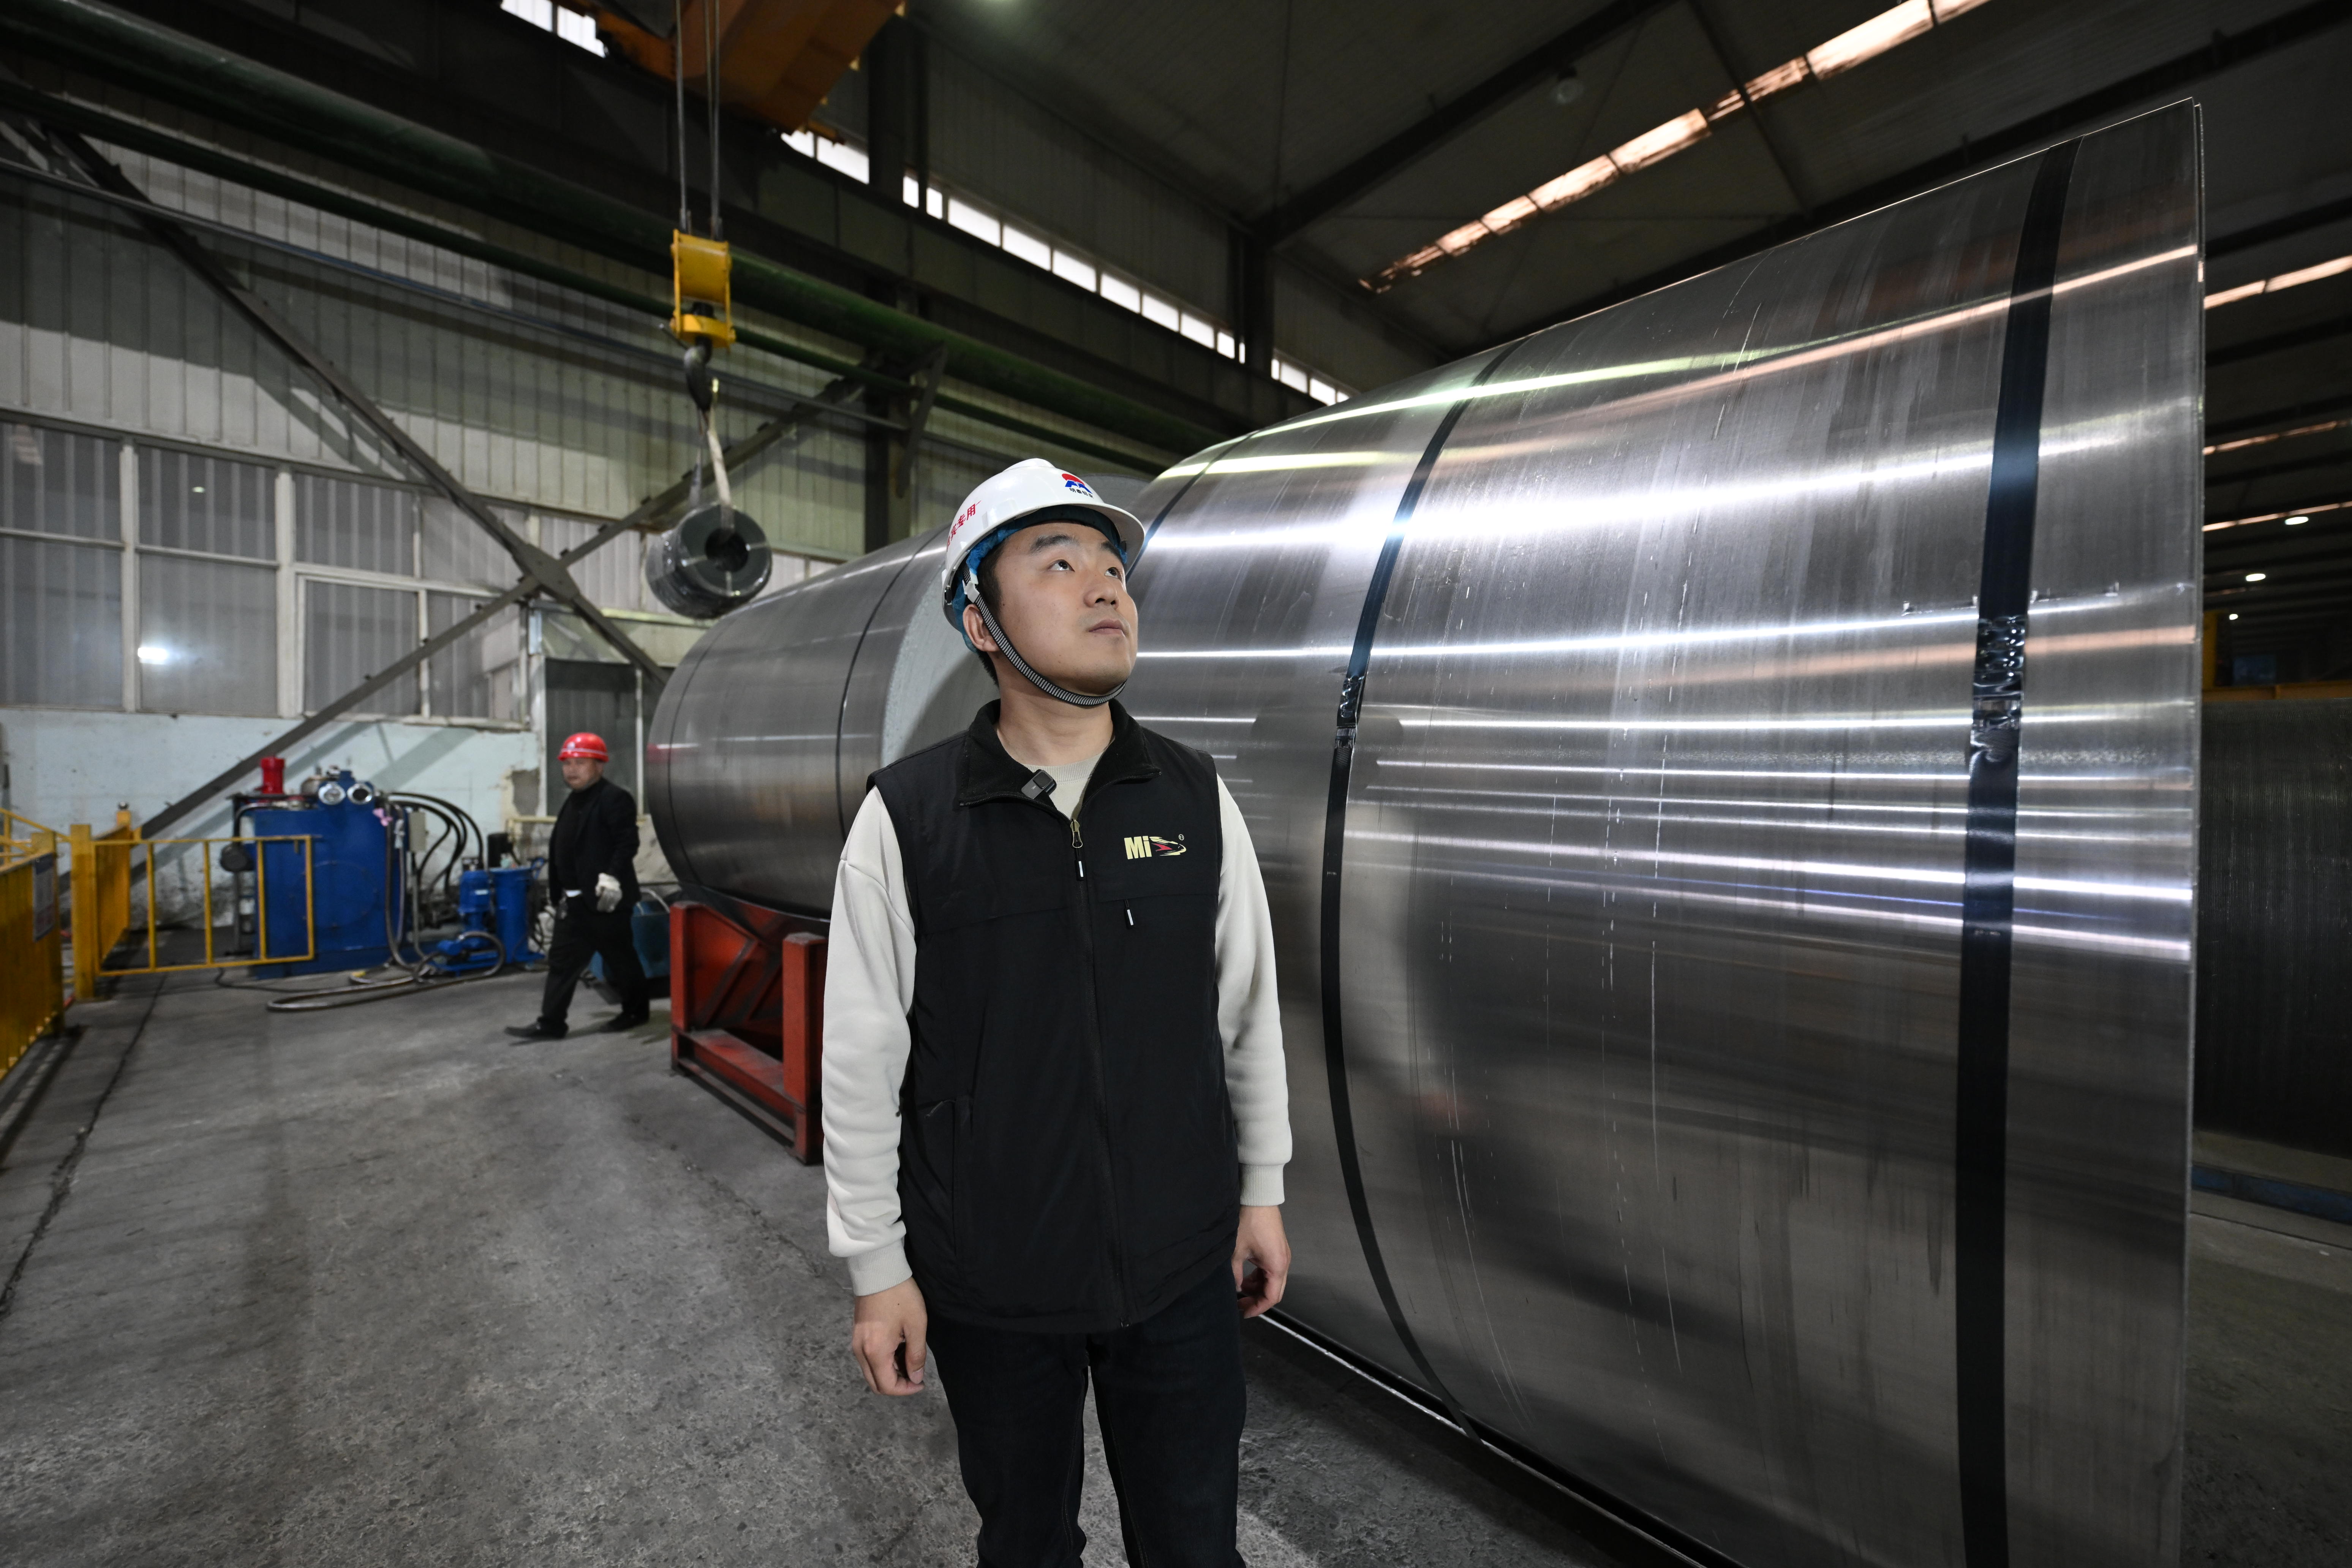 超宽铝板 超广用途——河南新材料产业“超”有看头系列报道之五